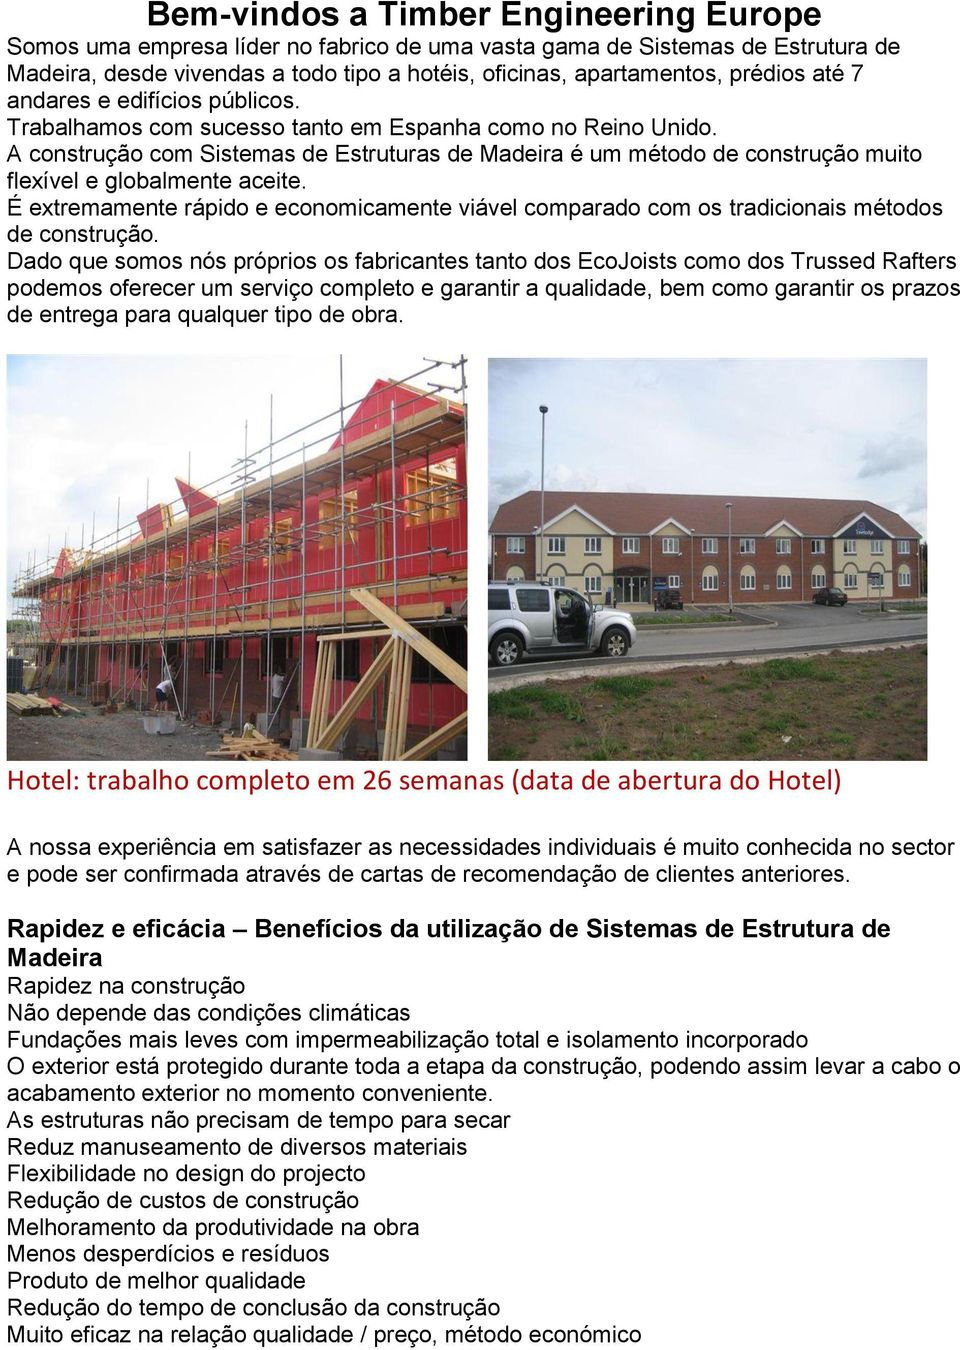 A construção com Sistemas de Estruturas de Madeira é um método de construção muito flexível e globalmente aceite.